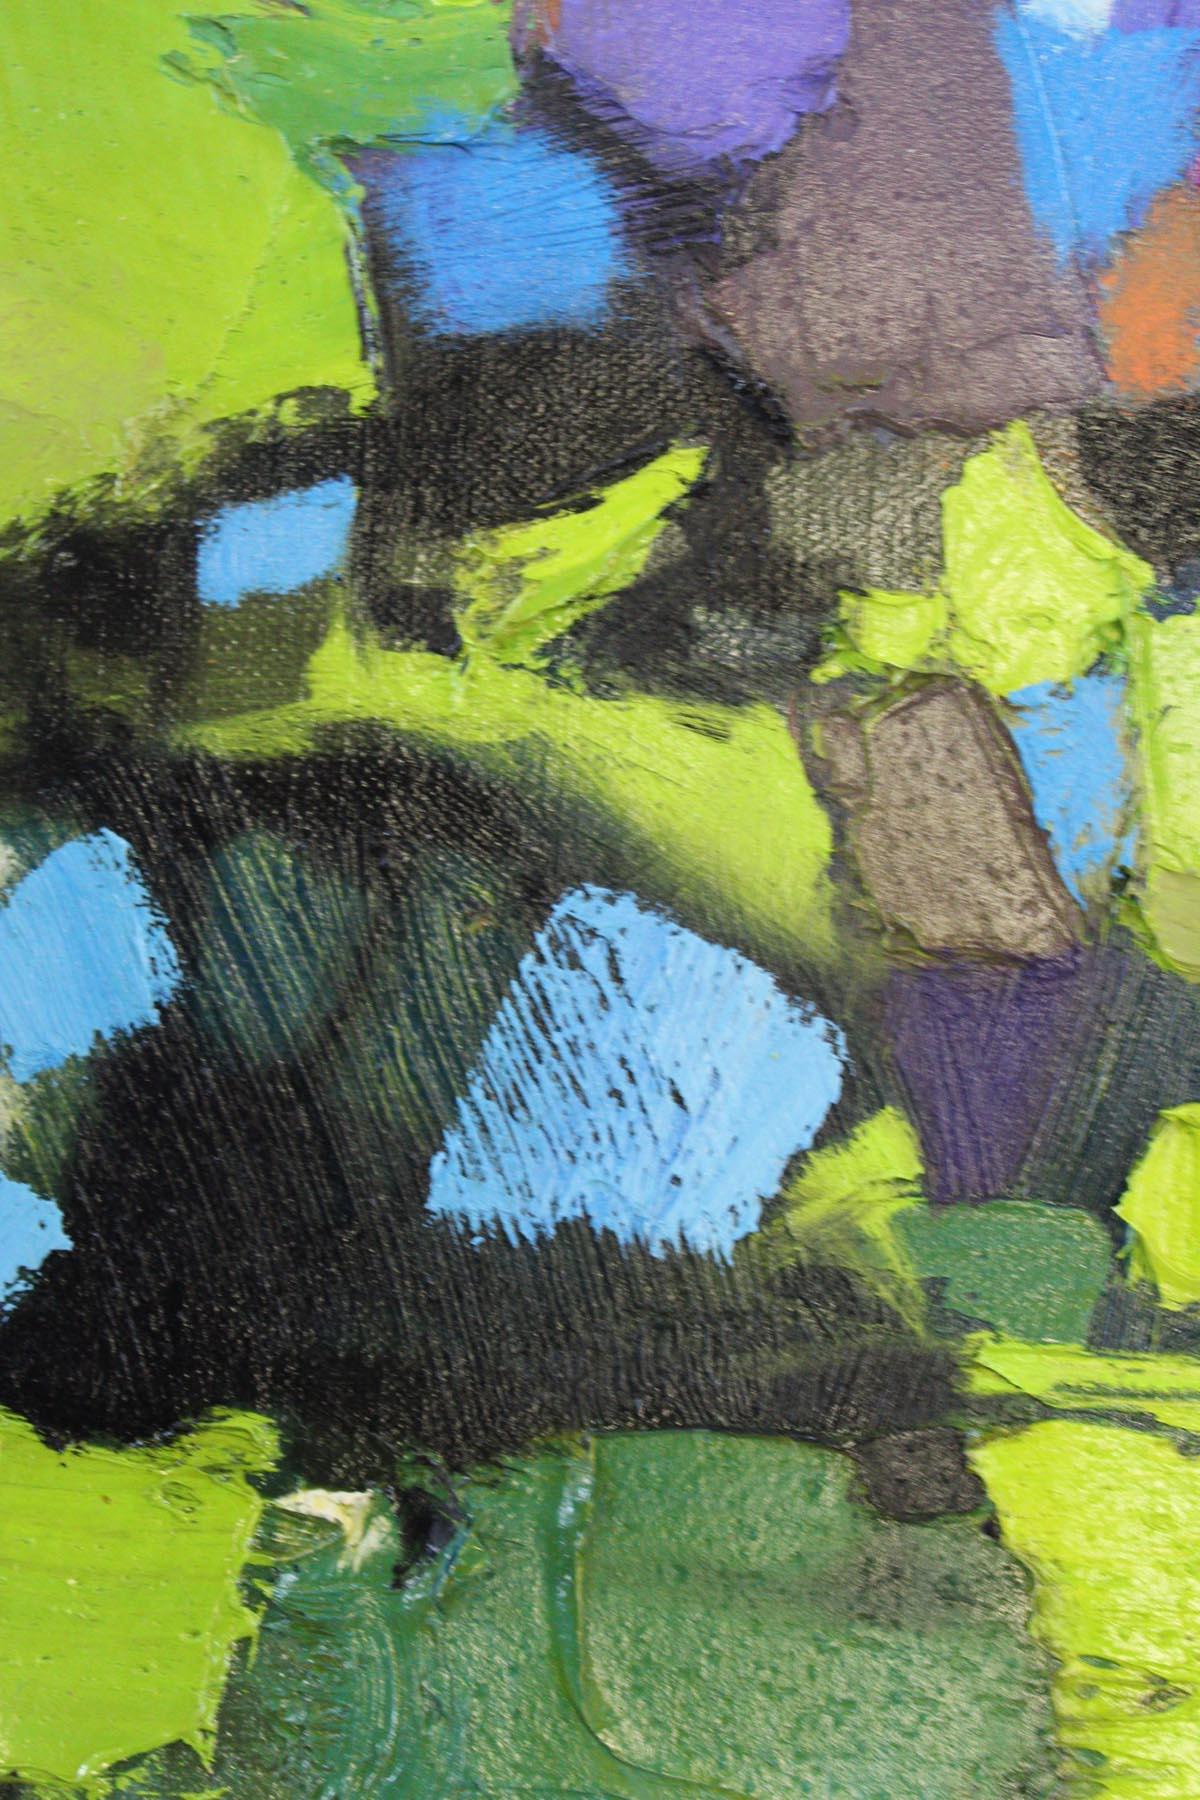 Scott Naismith
Brume de nettoyage
Peinture originale en techniques mixtes
Peinture à l'huile, peinture acrylique et peinture en aérosol sur toile de lin.
Taille de la toile : H 99.5cm x L 100cm x P 3cm
Taille du cadre : H 109,5cm x L 110cm x P